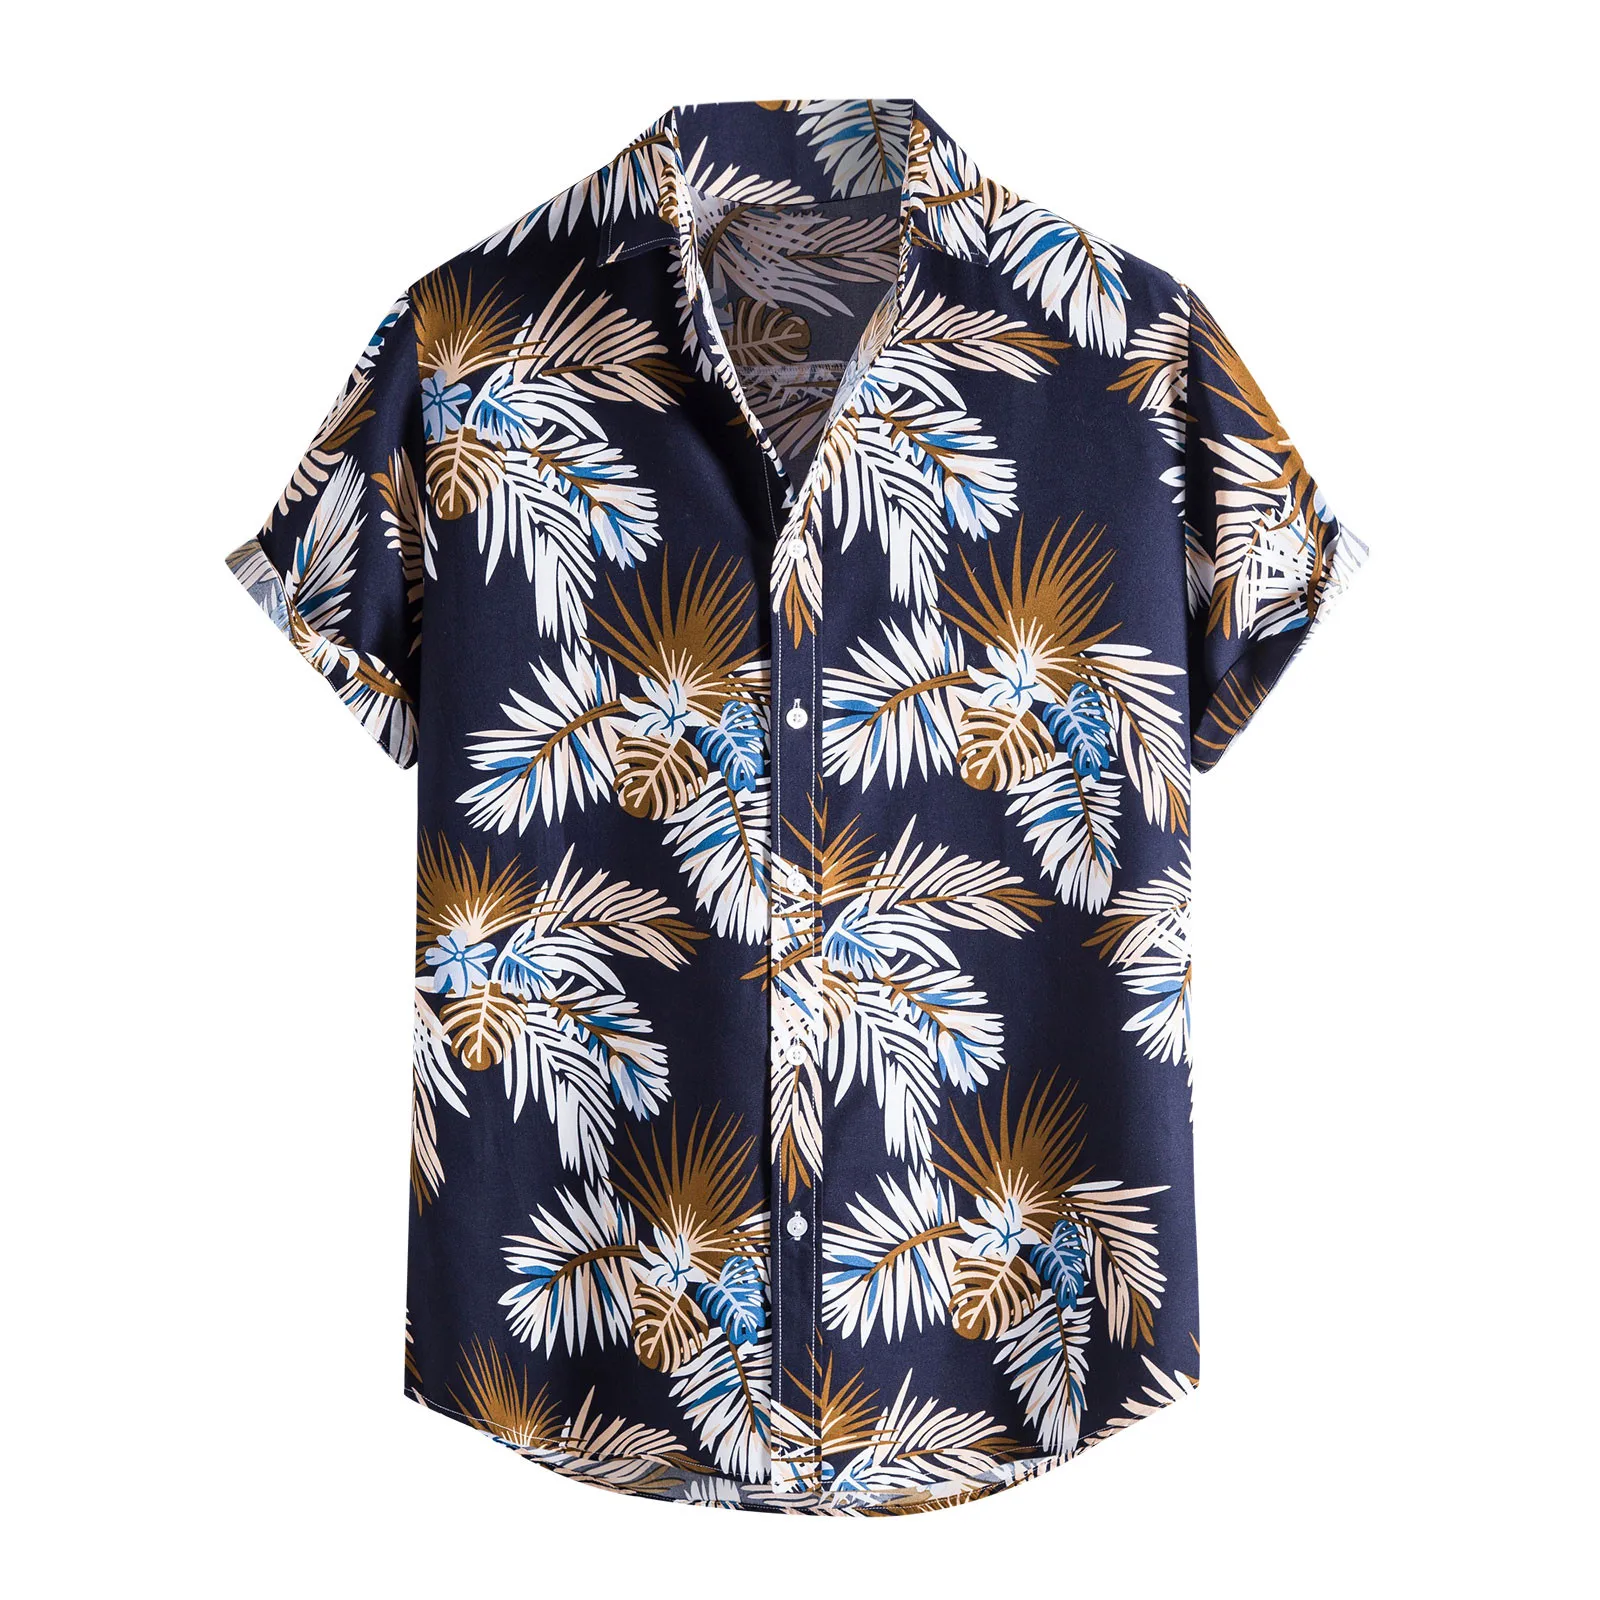 

Гавайская рубашка для мужчин, этническая сорочка с принтом листьев, короткий рукав, отложной воротник, на пуговицах, повседневная одежда, ле...